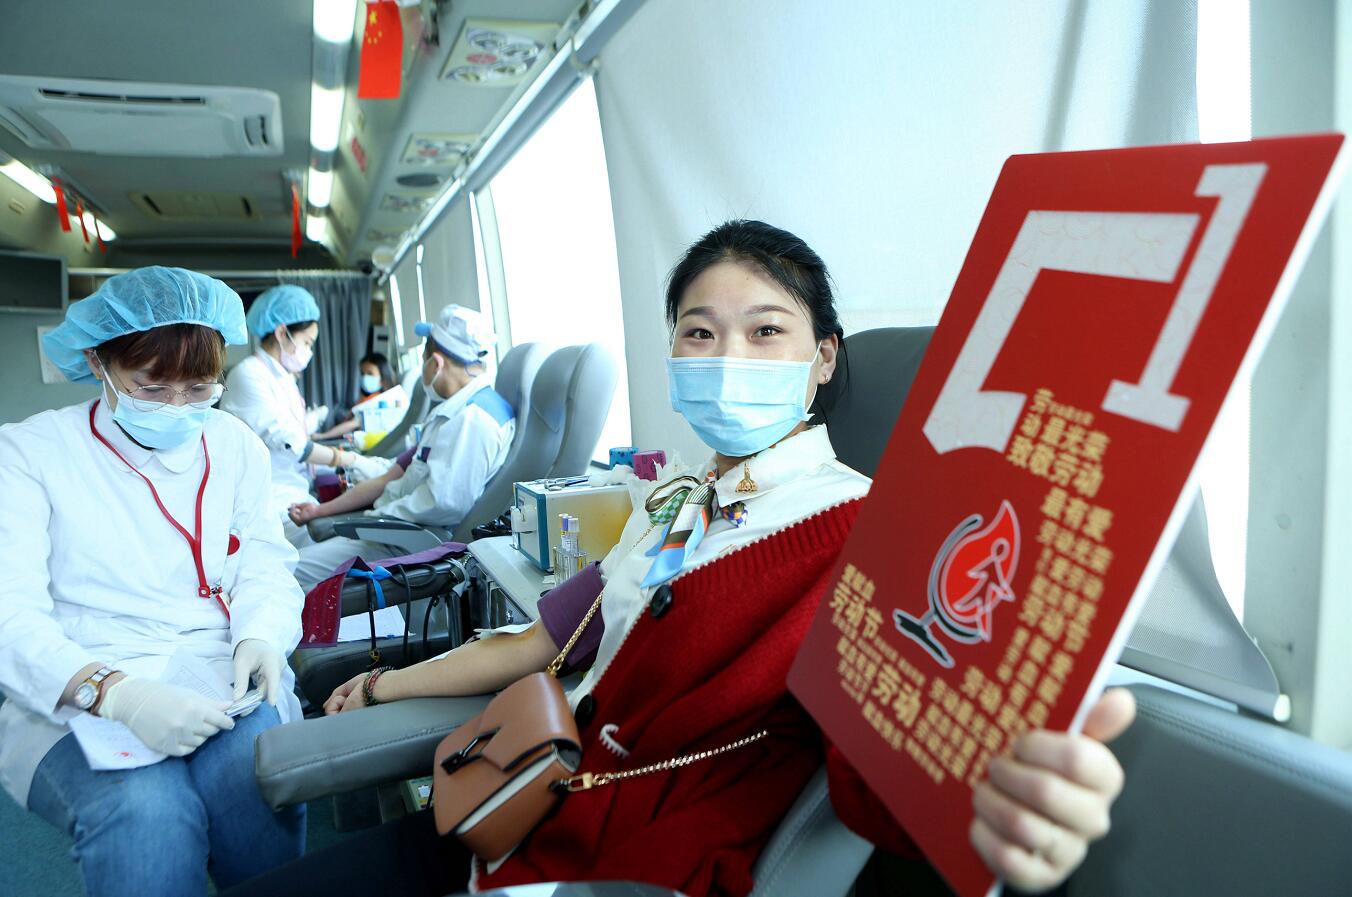 上海大金空调179名员工撸袖献血迎“五一”  企业坚持11年献血36万余毫升